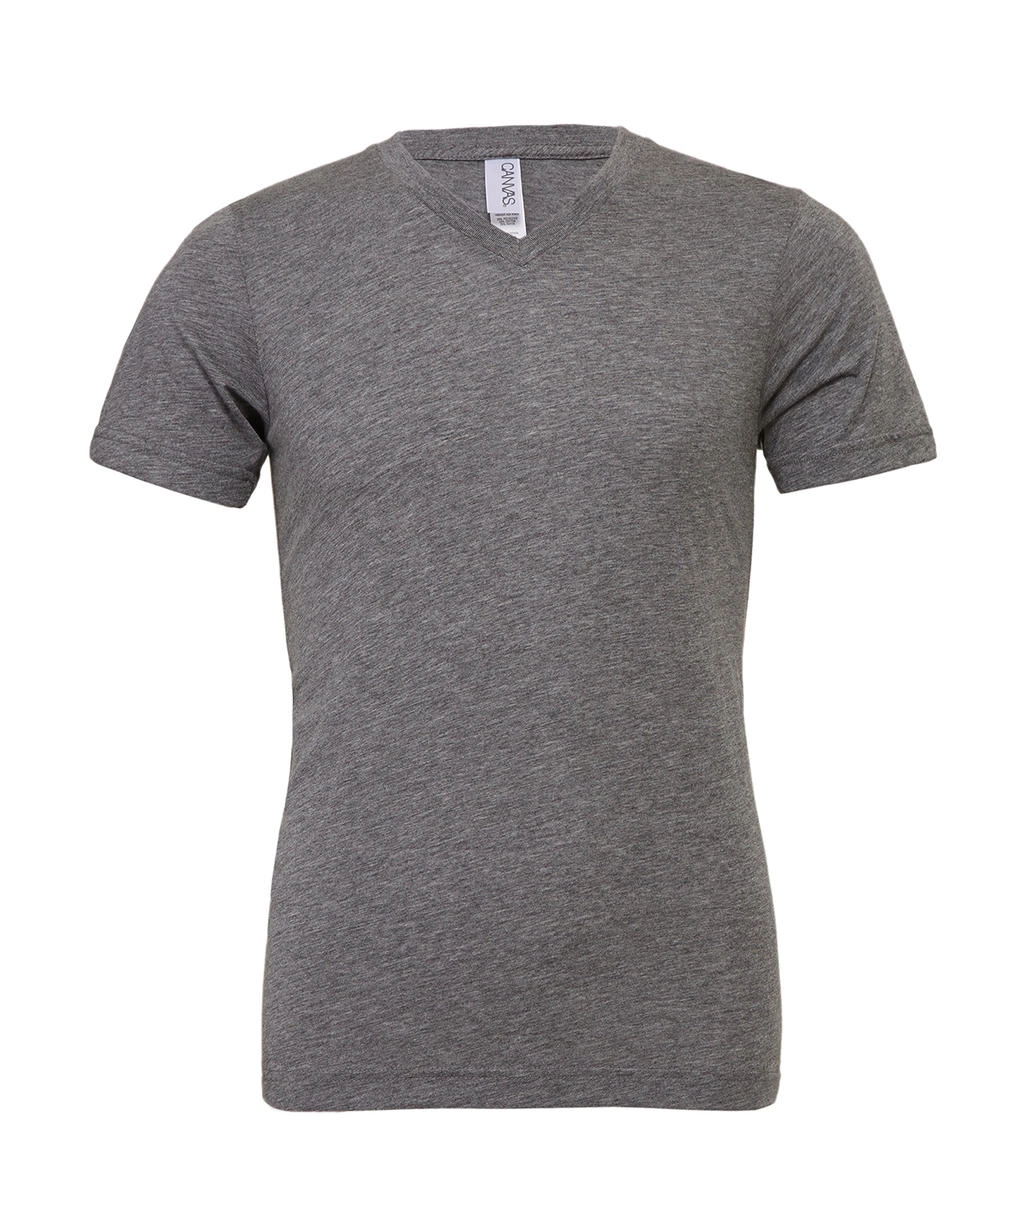 Unisex Triblend V-Neck T-Shirt zum Besticken und Bedrucken in der Farbe Grey Triblend mit Ihren Logo, Schriftzug oder Motiv.